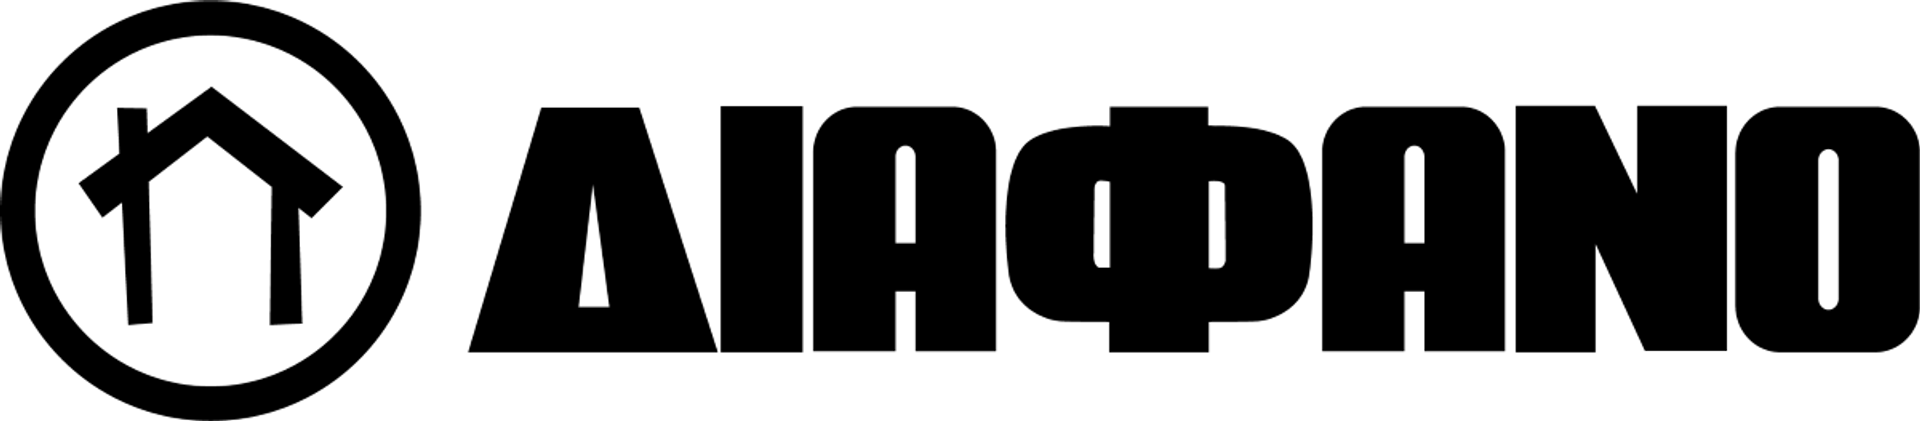 ΔΙΑΦΑΝΟ logo